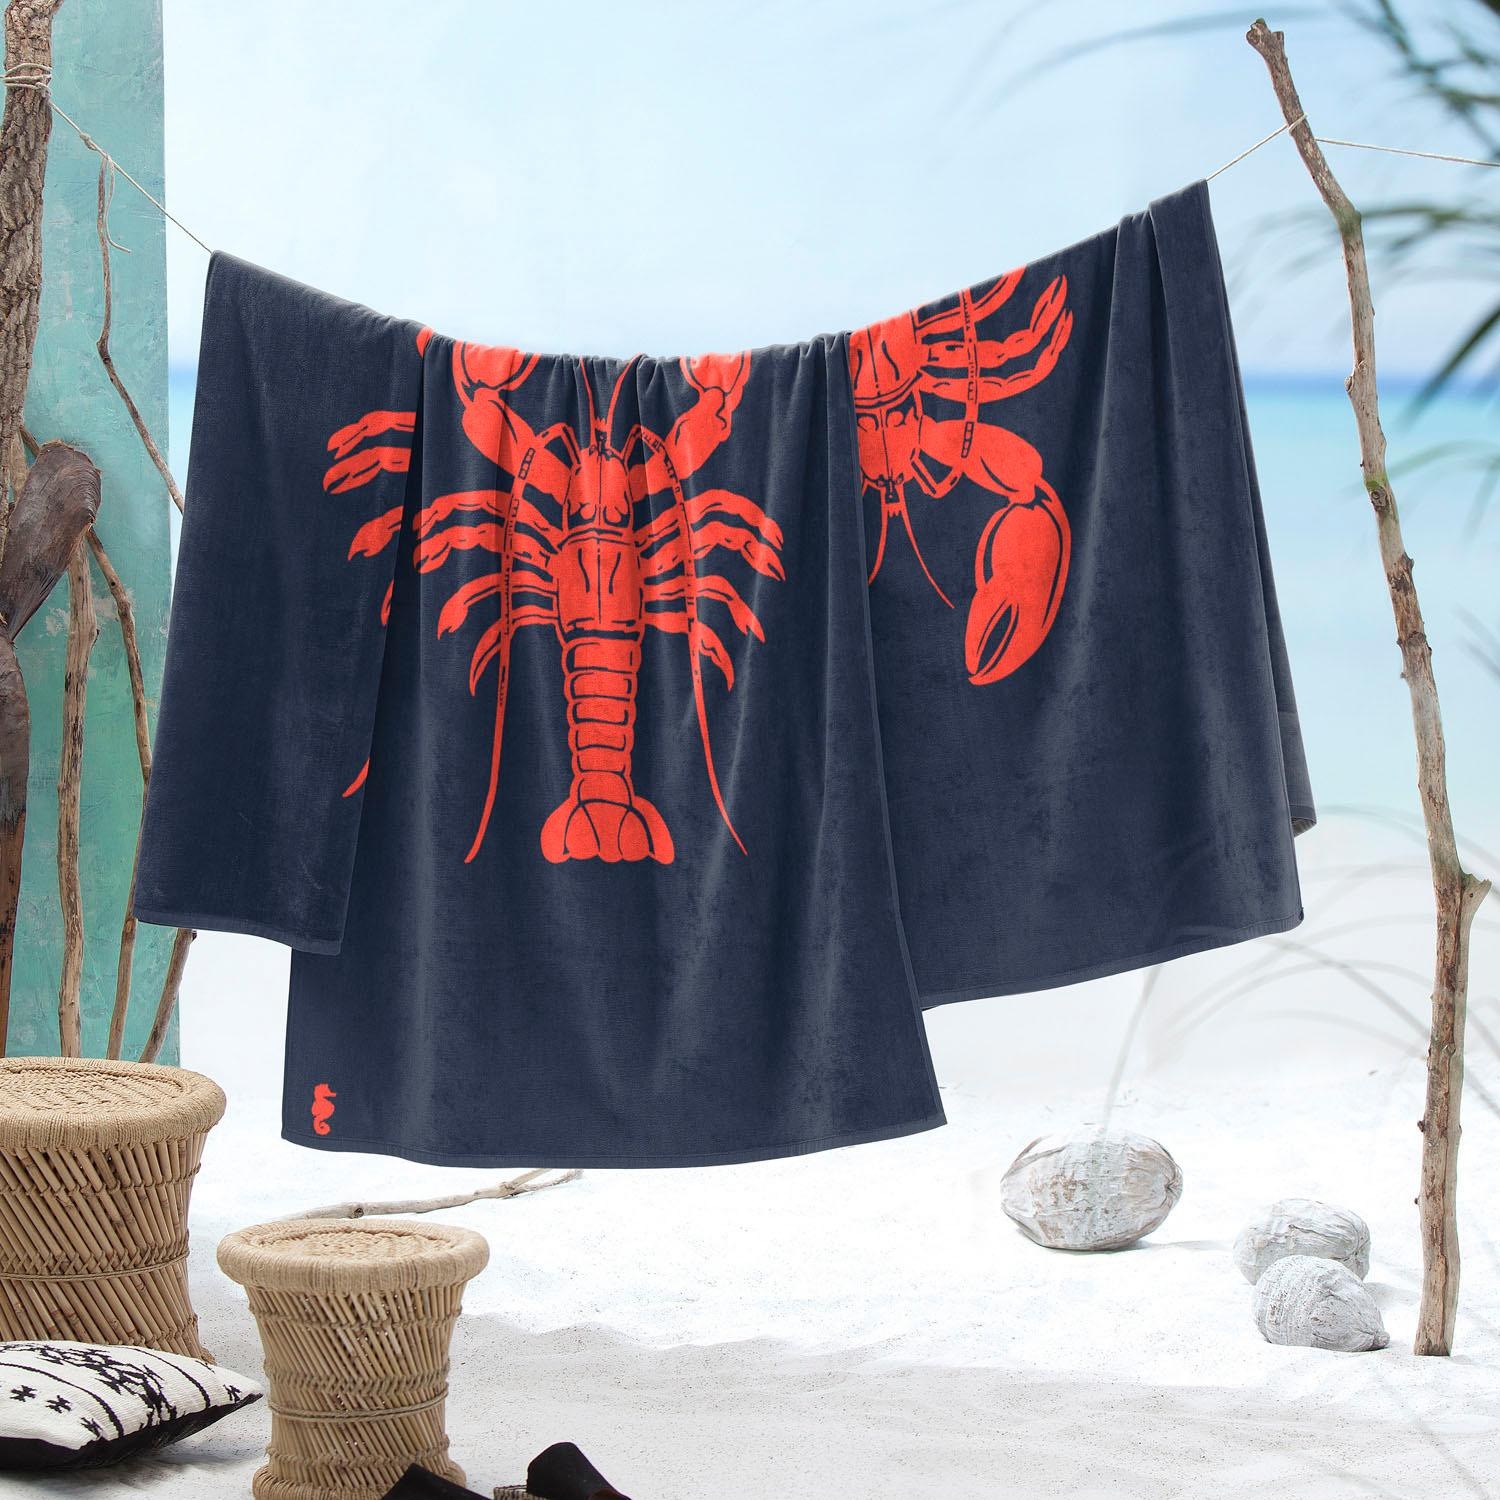 Seahorse Strandtuch »Lobster«, OTTO kaufen bei mit Hummer (1 St.)